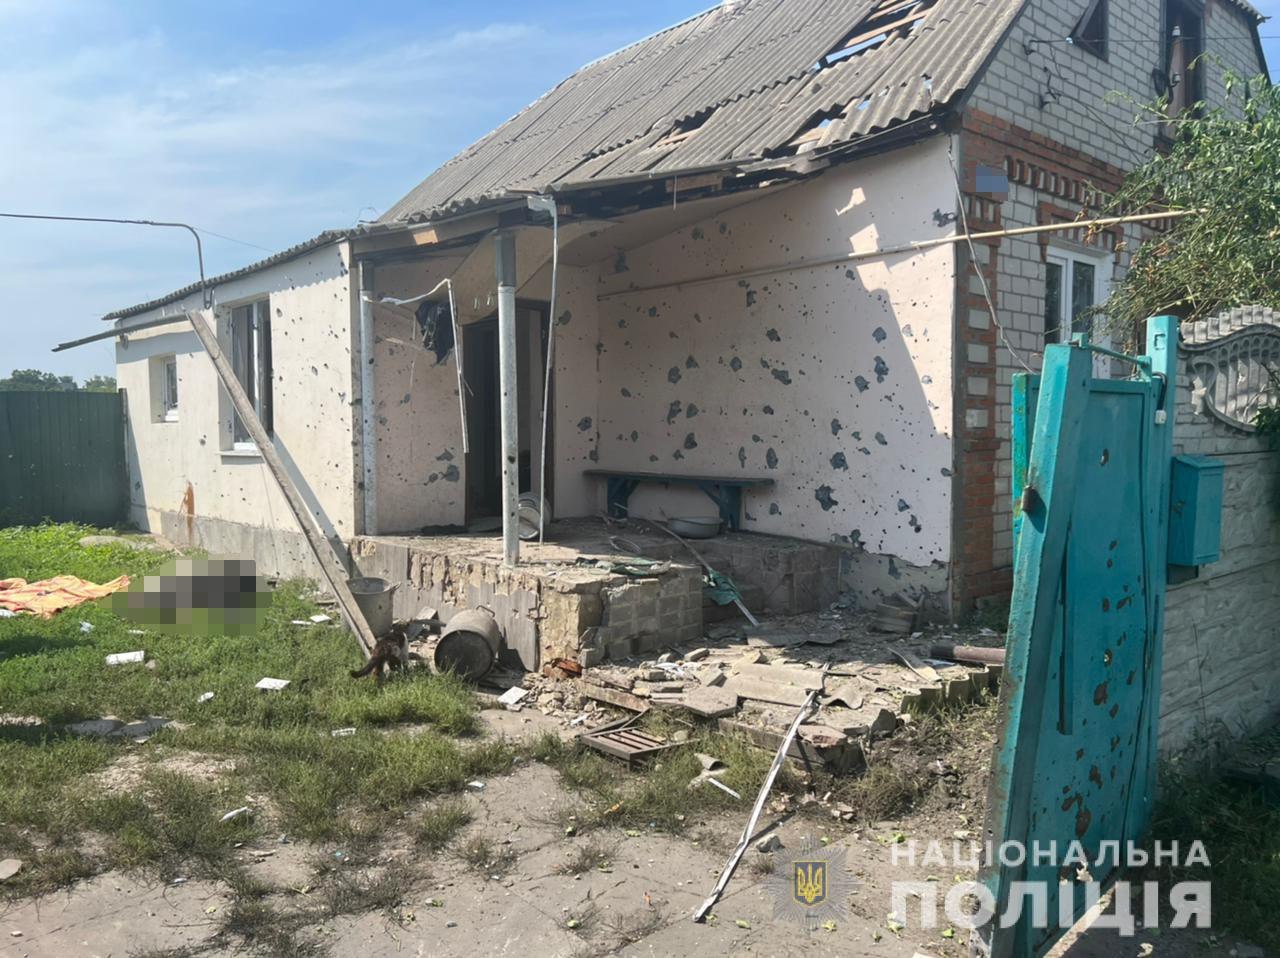 Наслідки обстрілу касетними снарядами Старого Салтова, 10 серпня, фото: Національна поліція